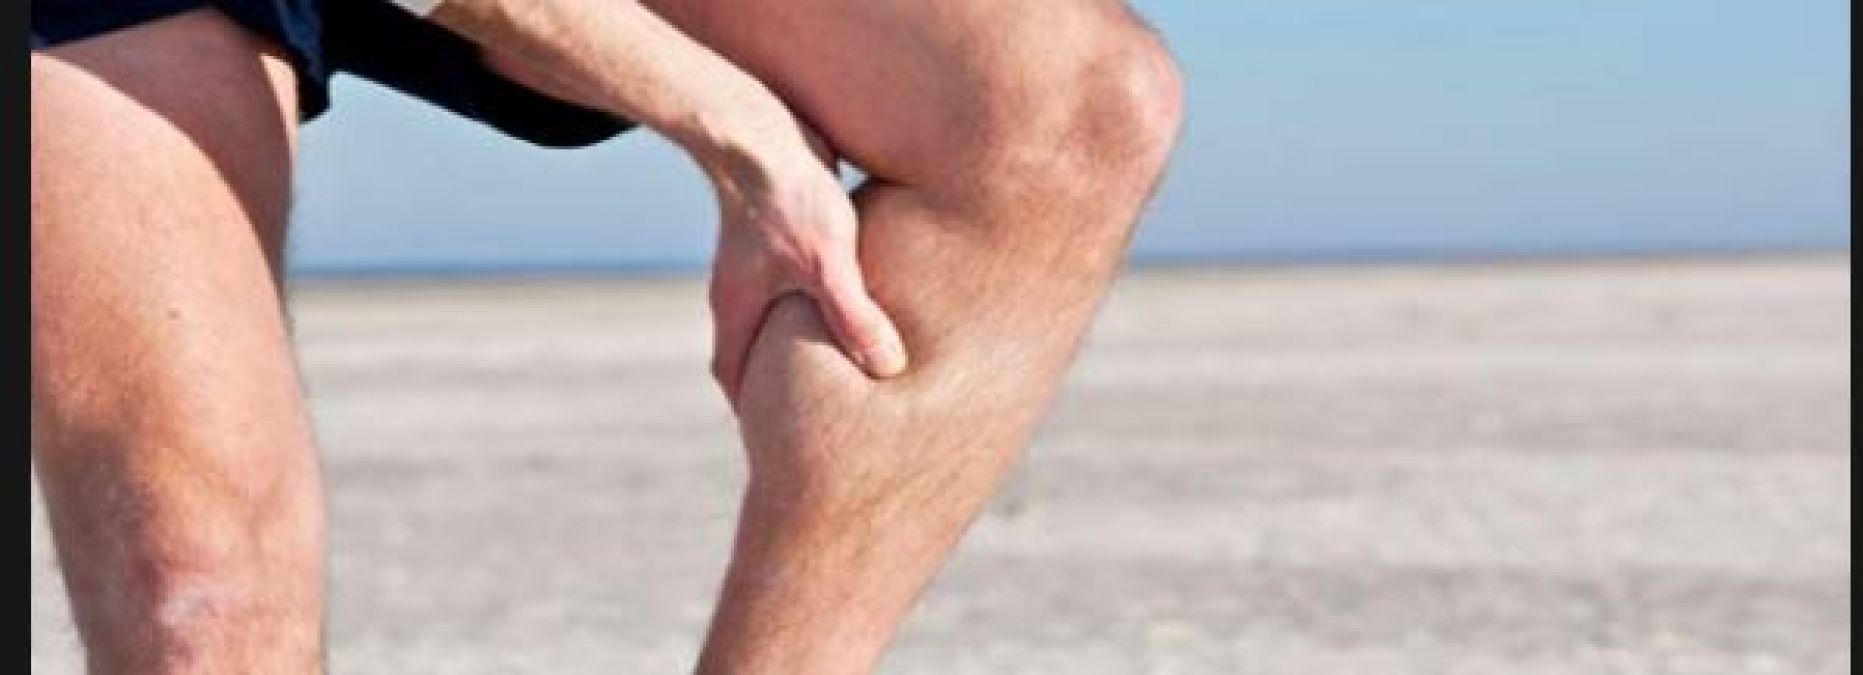 दौड़ने के बाद पैर में होता है दर्द तो अपनाए ये 6 उपाय